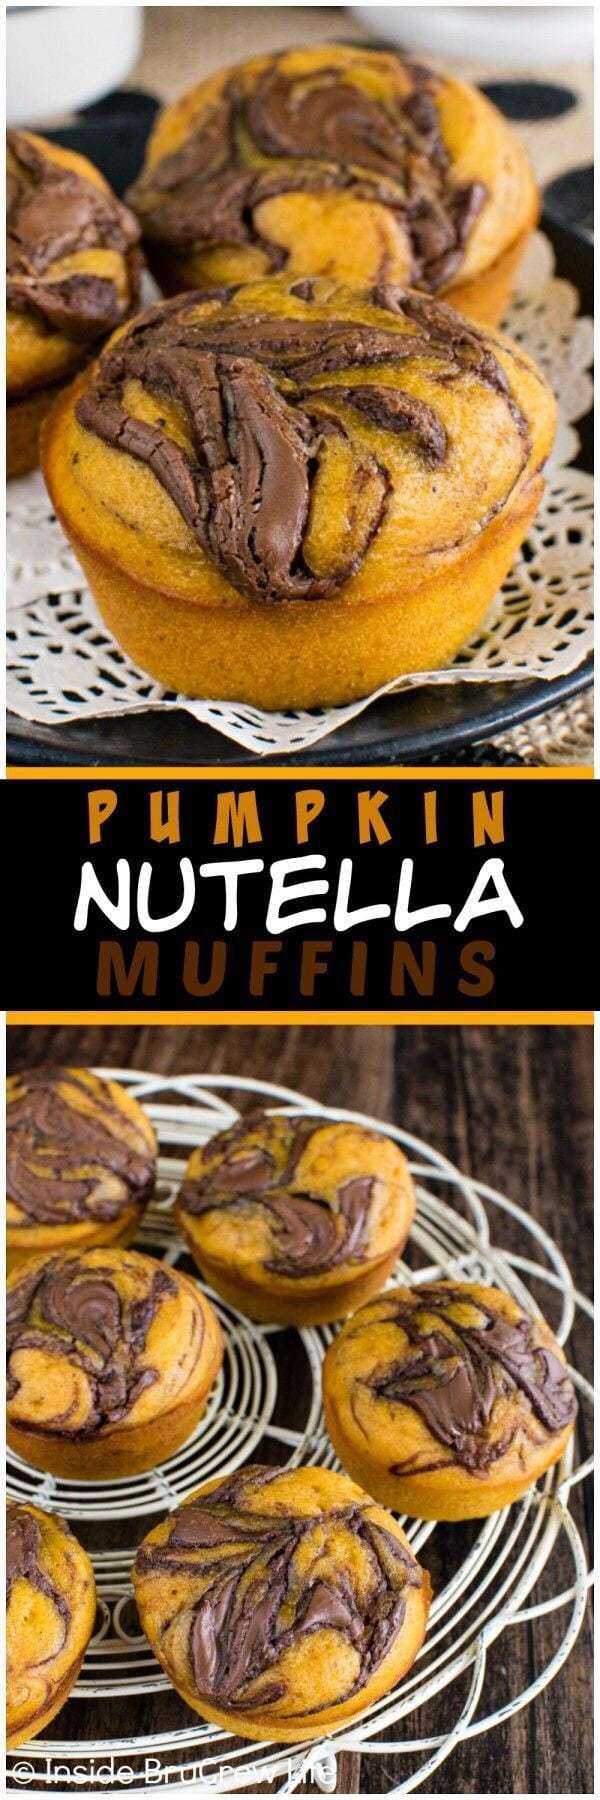 Pumpkin Spice Recipes: Pumpkin Nutella Muffins